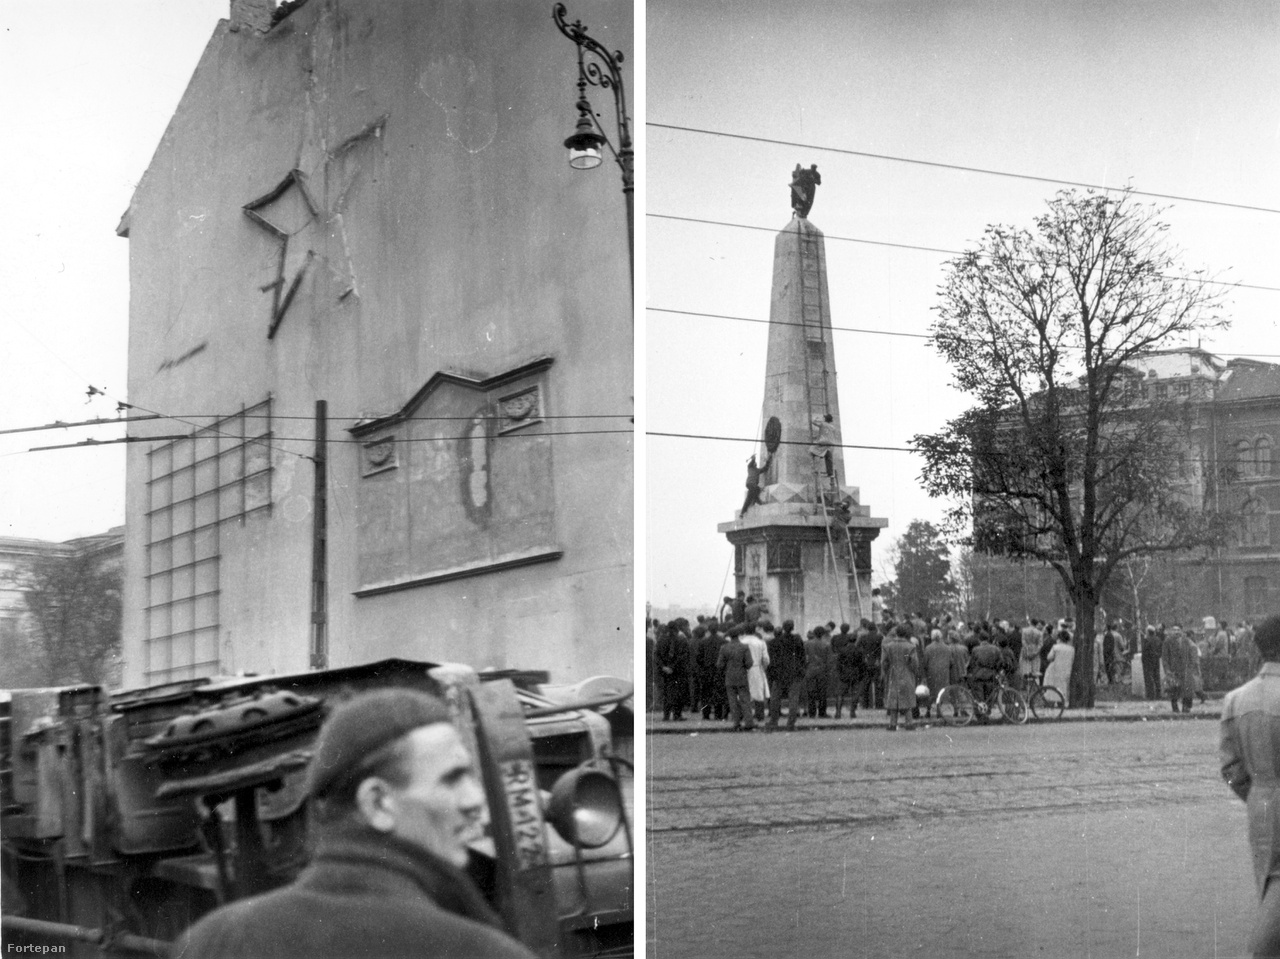 Balra a Kálvin tér tűzfala a félig már levert vöröscsillaggal, előtte felborított rendőrségi teherautó; jobbra a Gellért tér szovjet katonai emlékművéről szedik le éppen a csillagot és a szovjet címert.